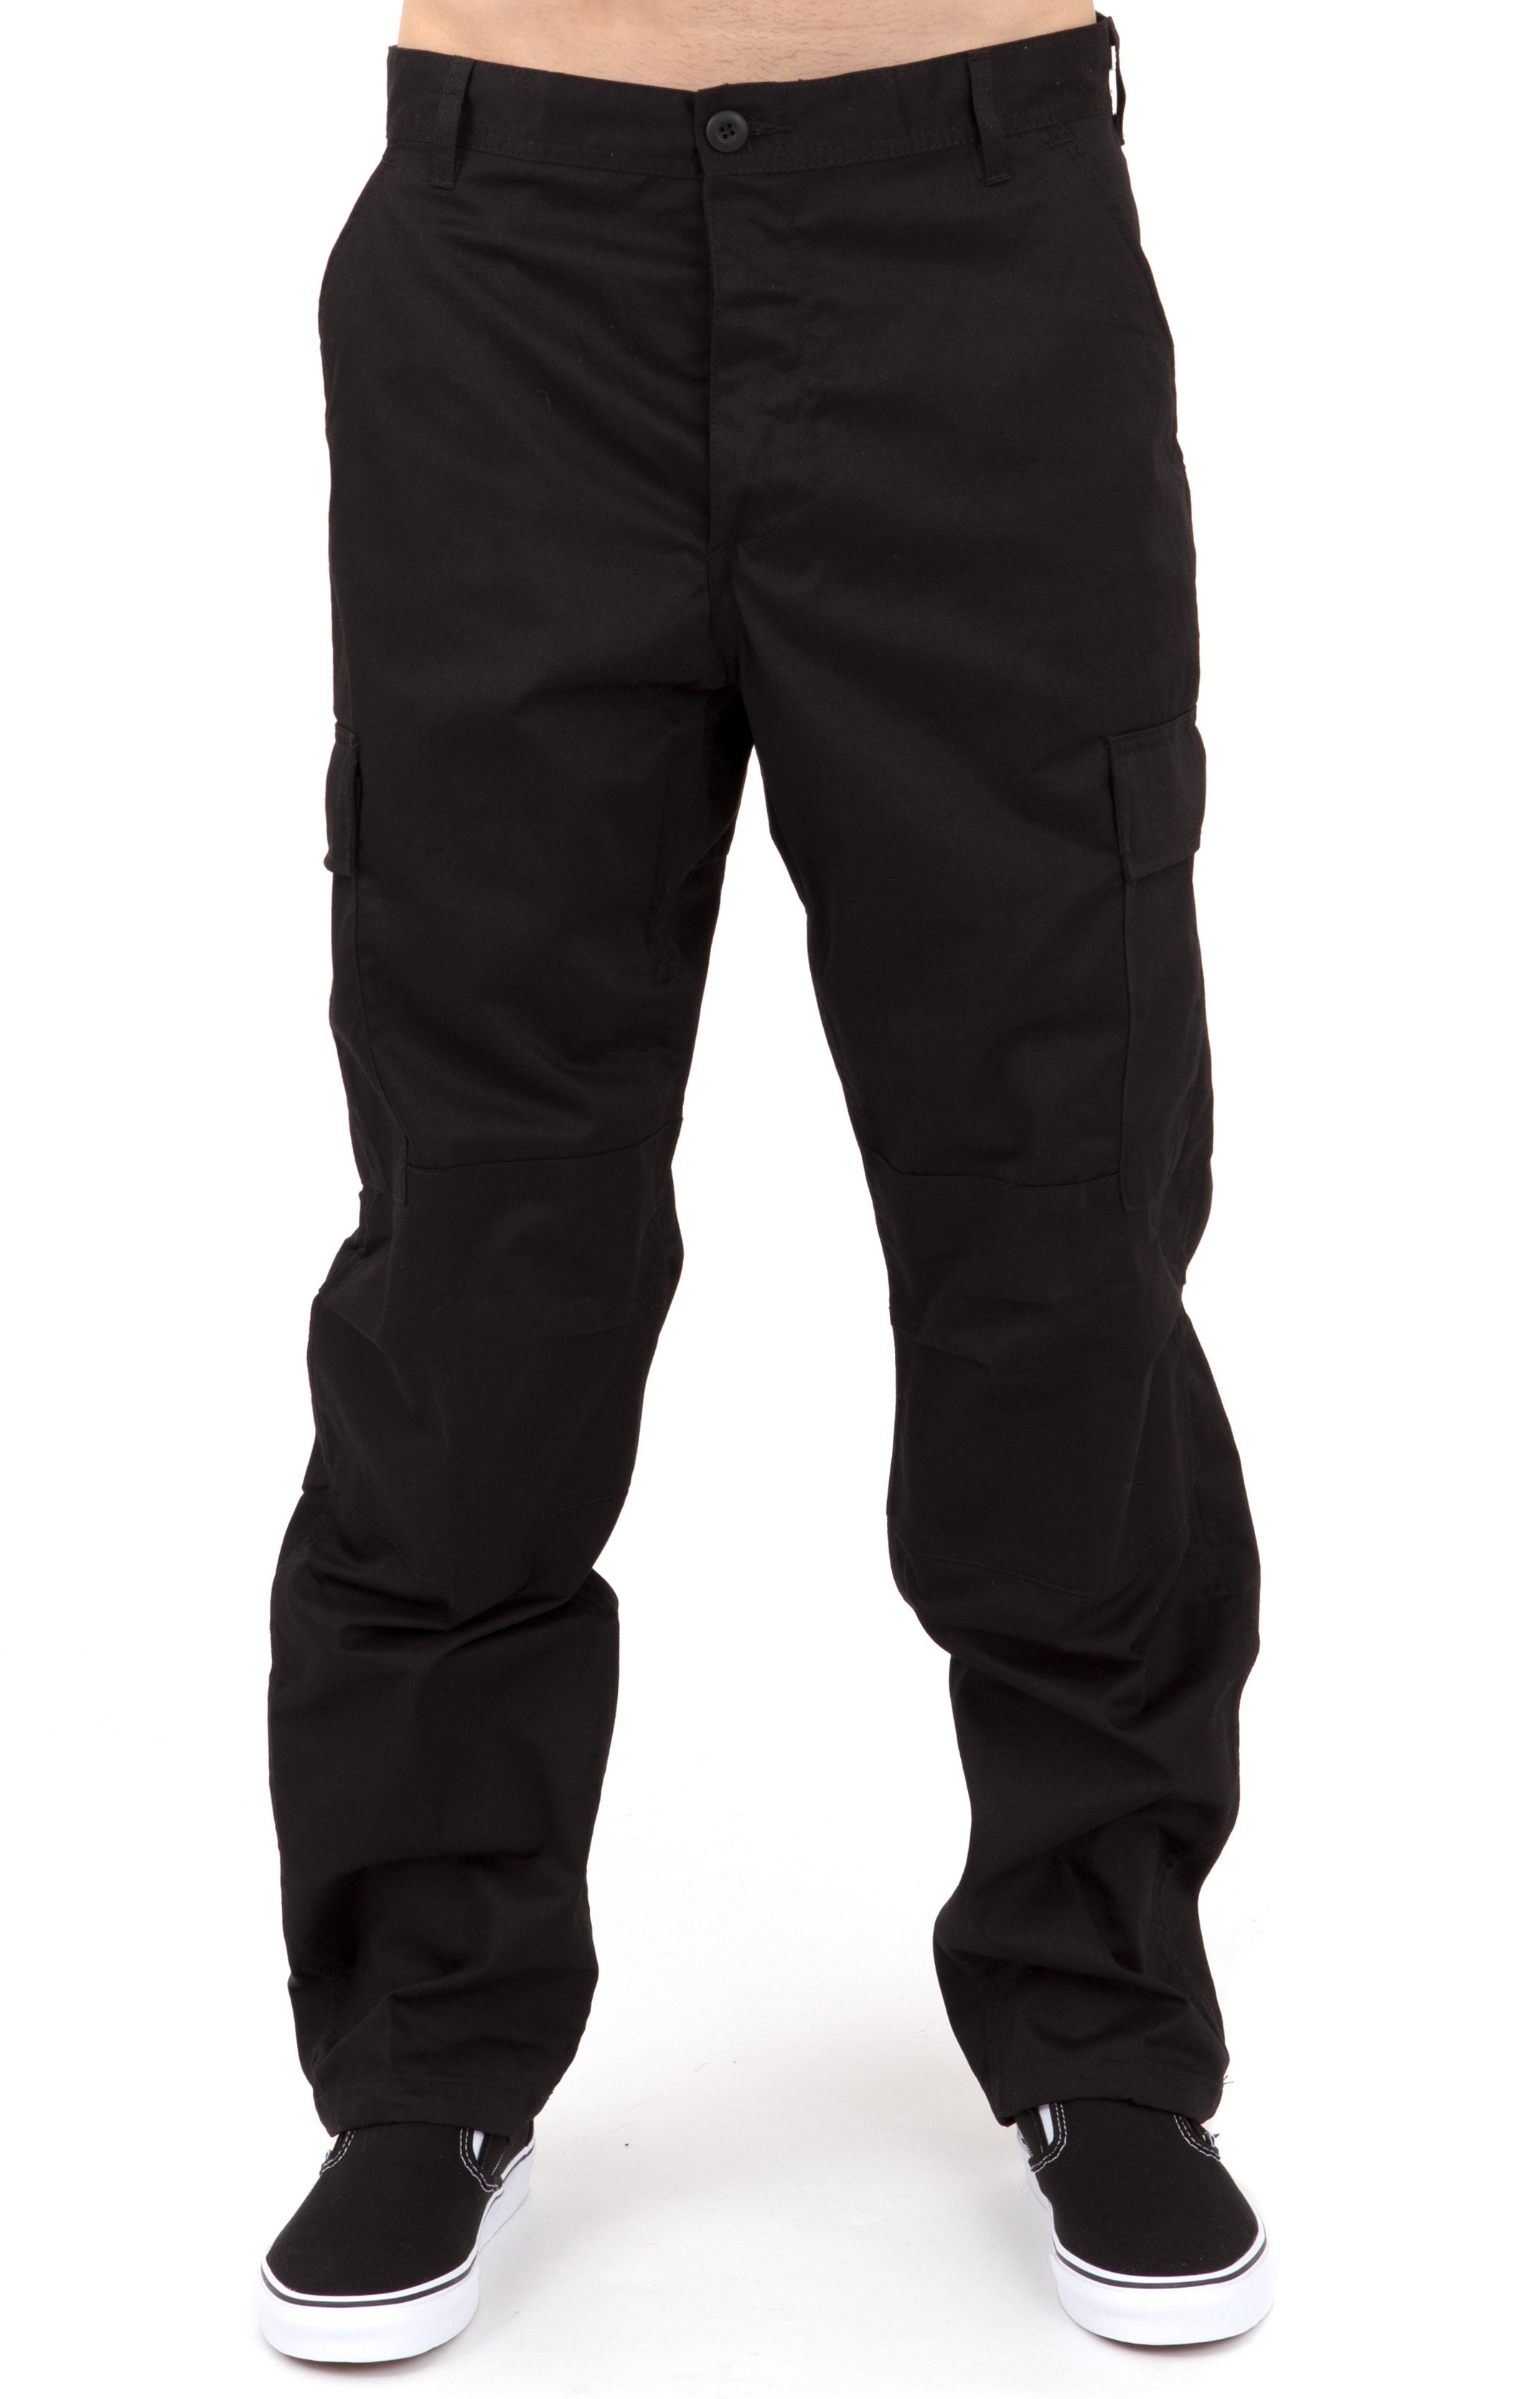 (7971) Rothco Tactical BDU Pants - Black